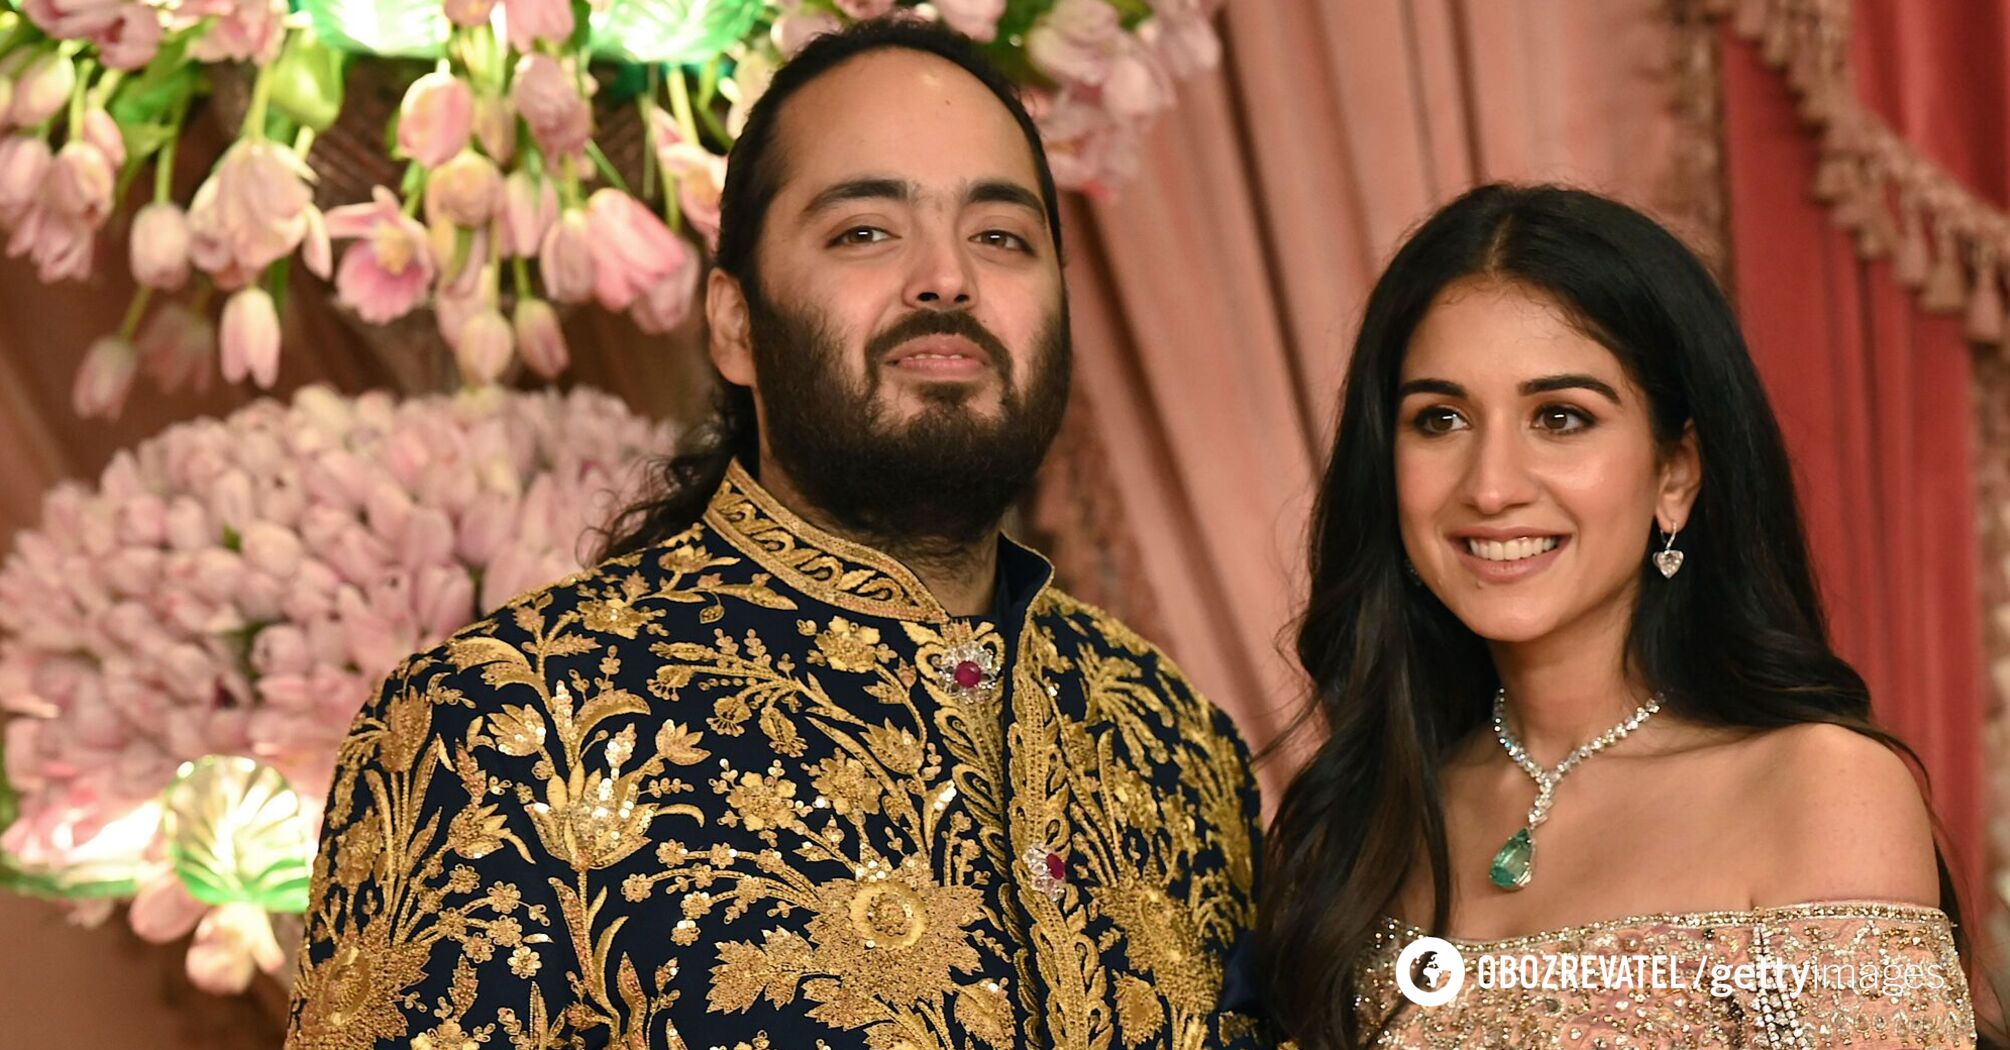 W stylu 'królewskiego blasku' z Bieberem za 10 milionów dolarów: jak odbyła się ceremonia przedślubna syna najbogatszego człowieka w Indiach